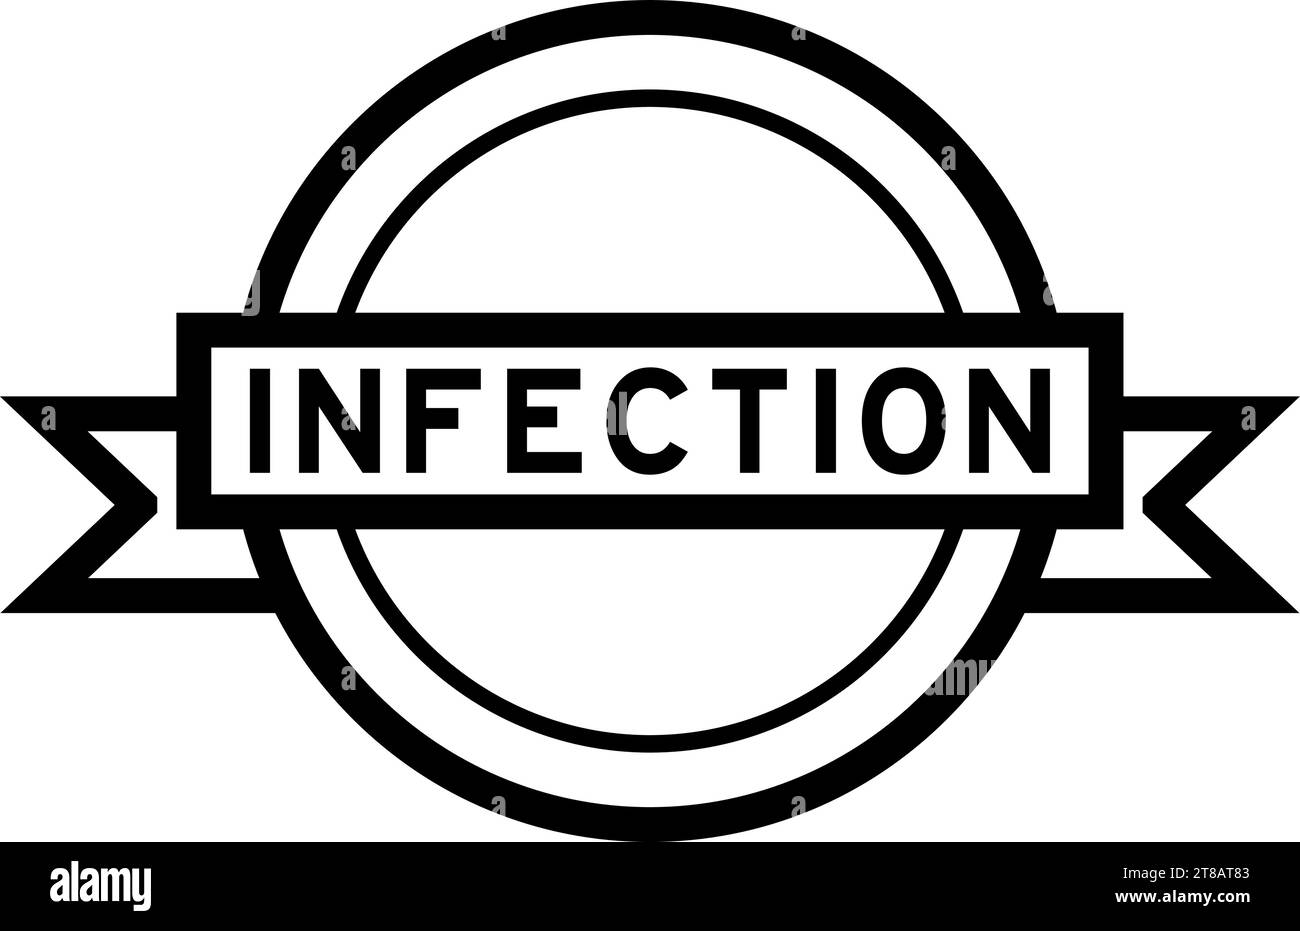 Vintage schwarze Farbe rundes Label Banner mit Wort Infektion auf weißem Hintergrund Stock Vektor